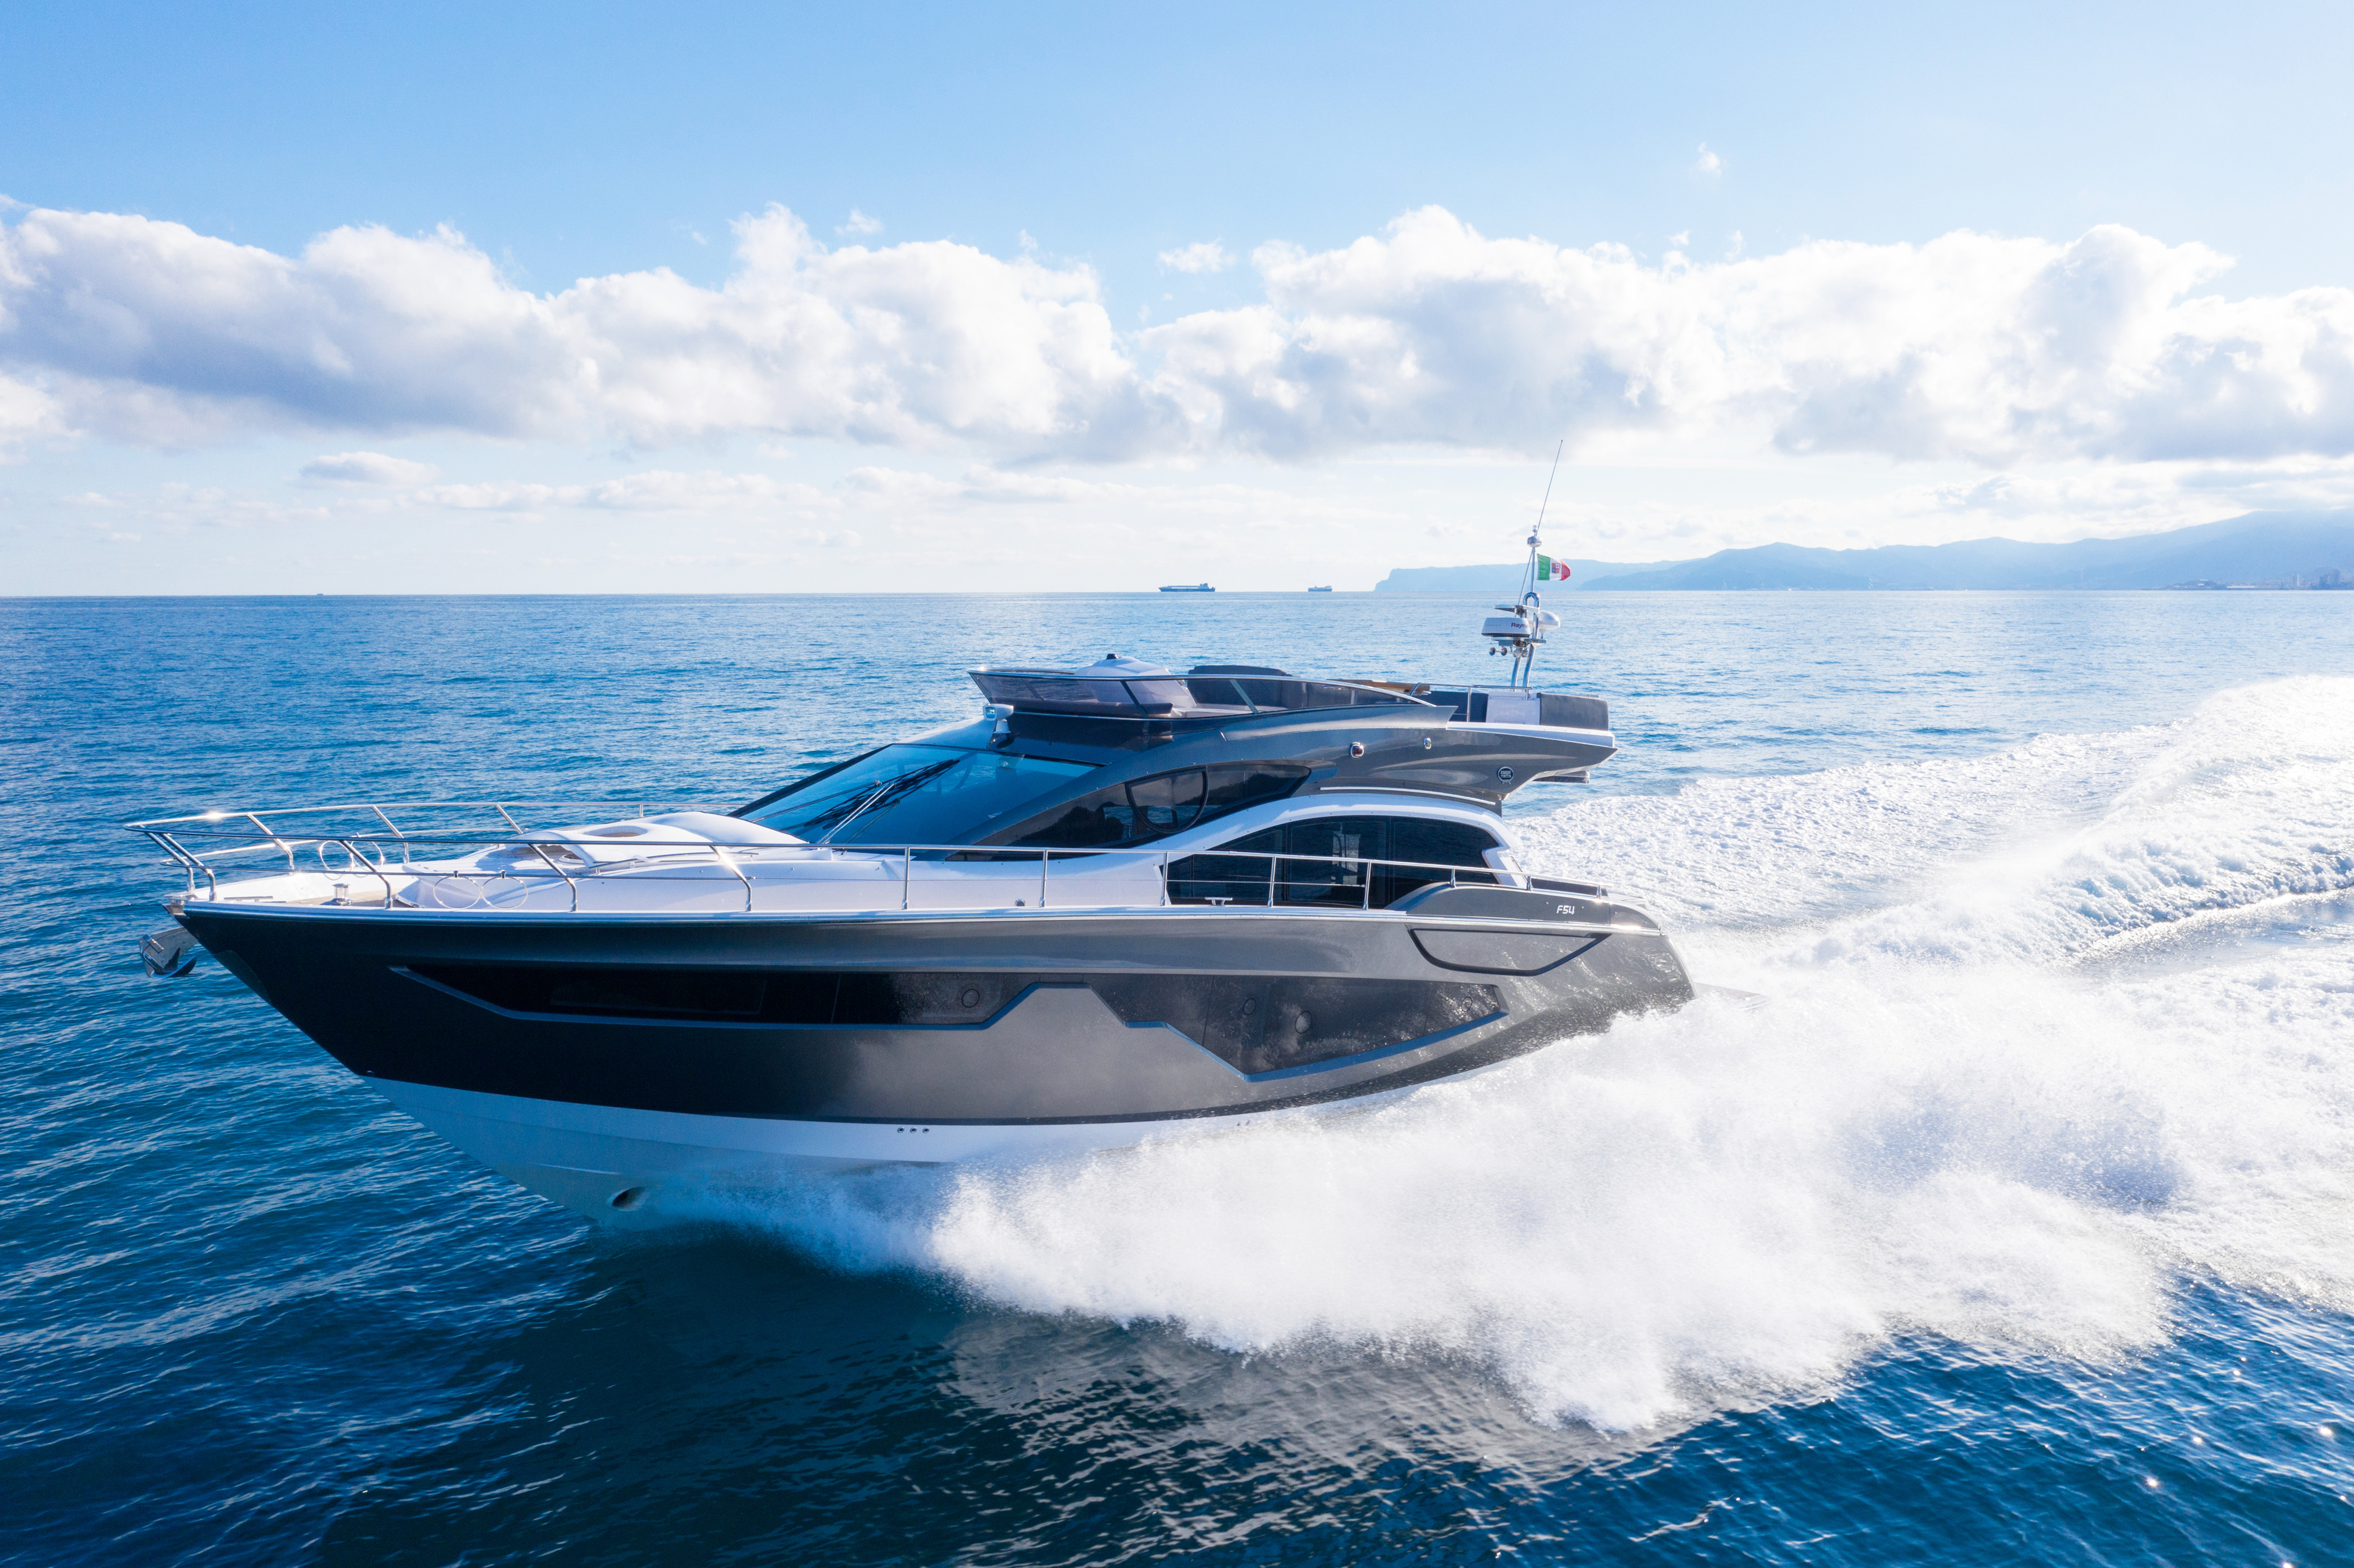 作为兼具欧式和美式优点的高速游艇,意大利游艇品牌sessa游艇融合了